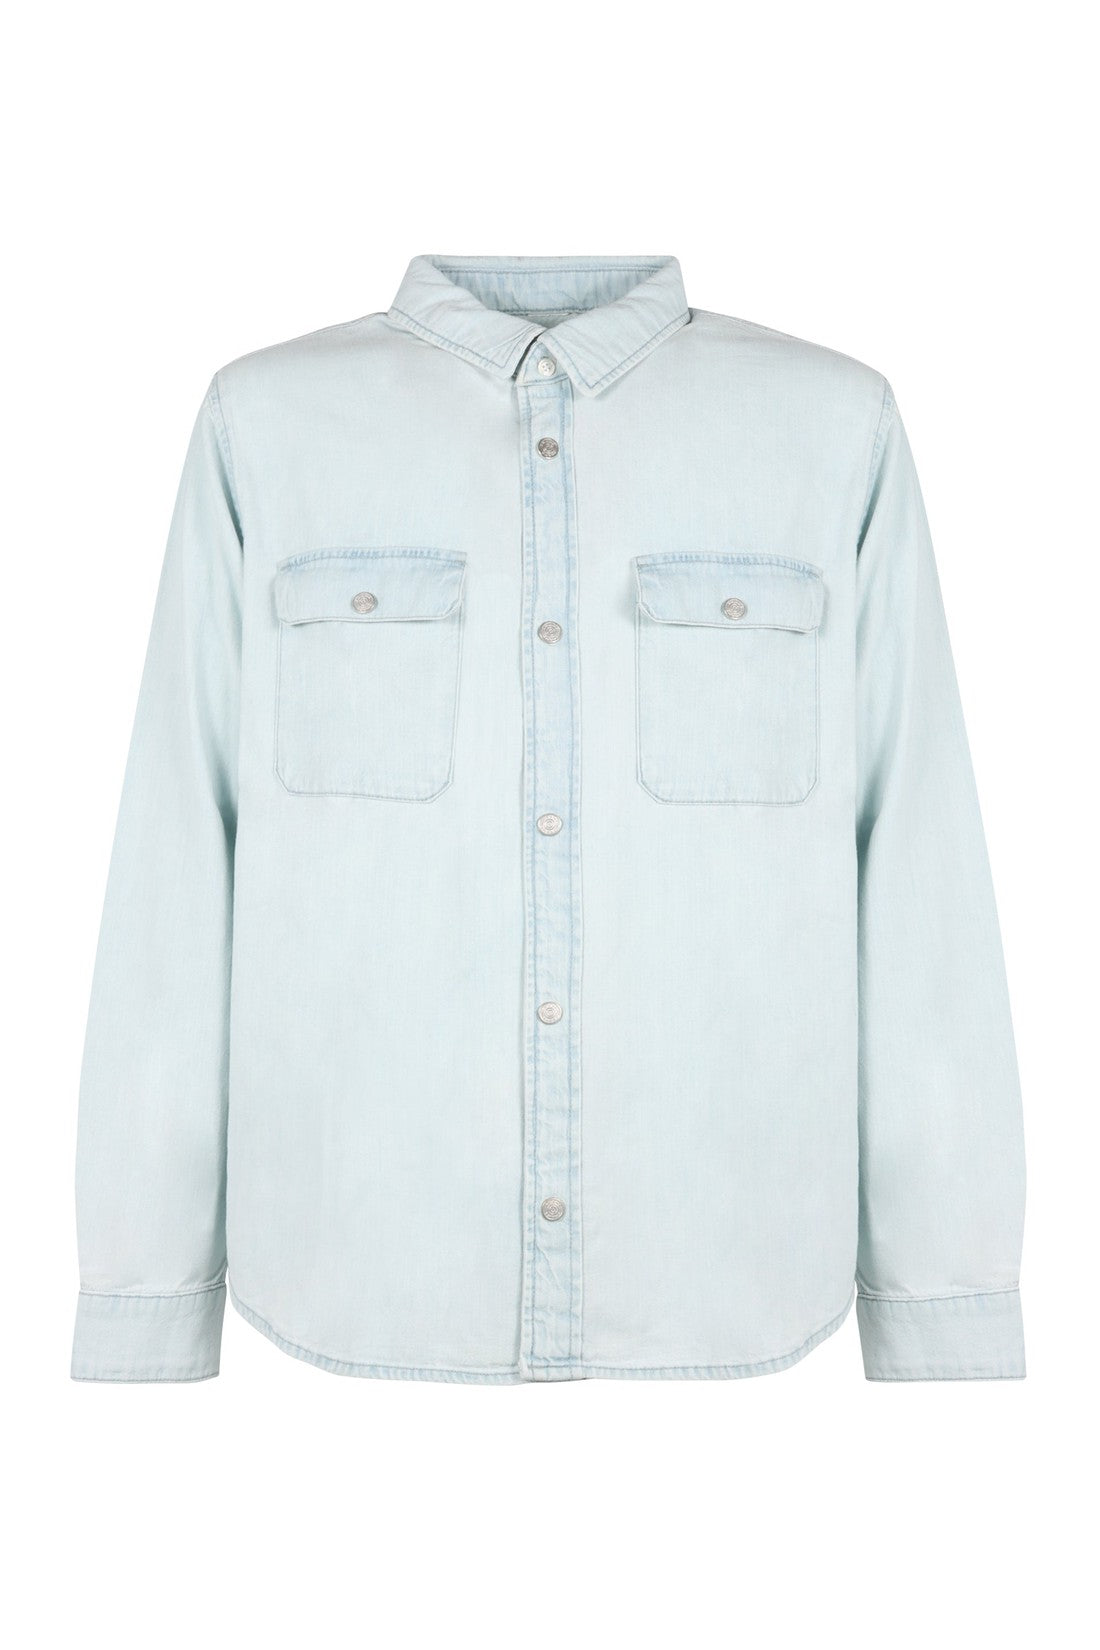 Frame-OUTLET-SALE-Cotton shirt-ARCHIVIST